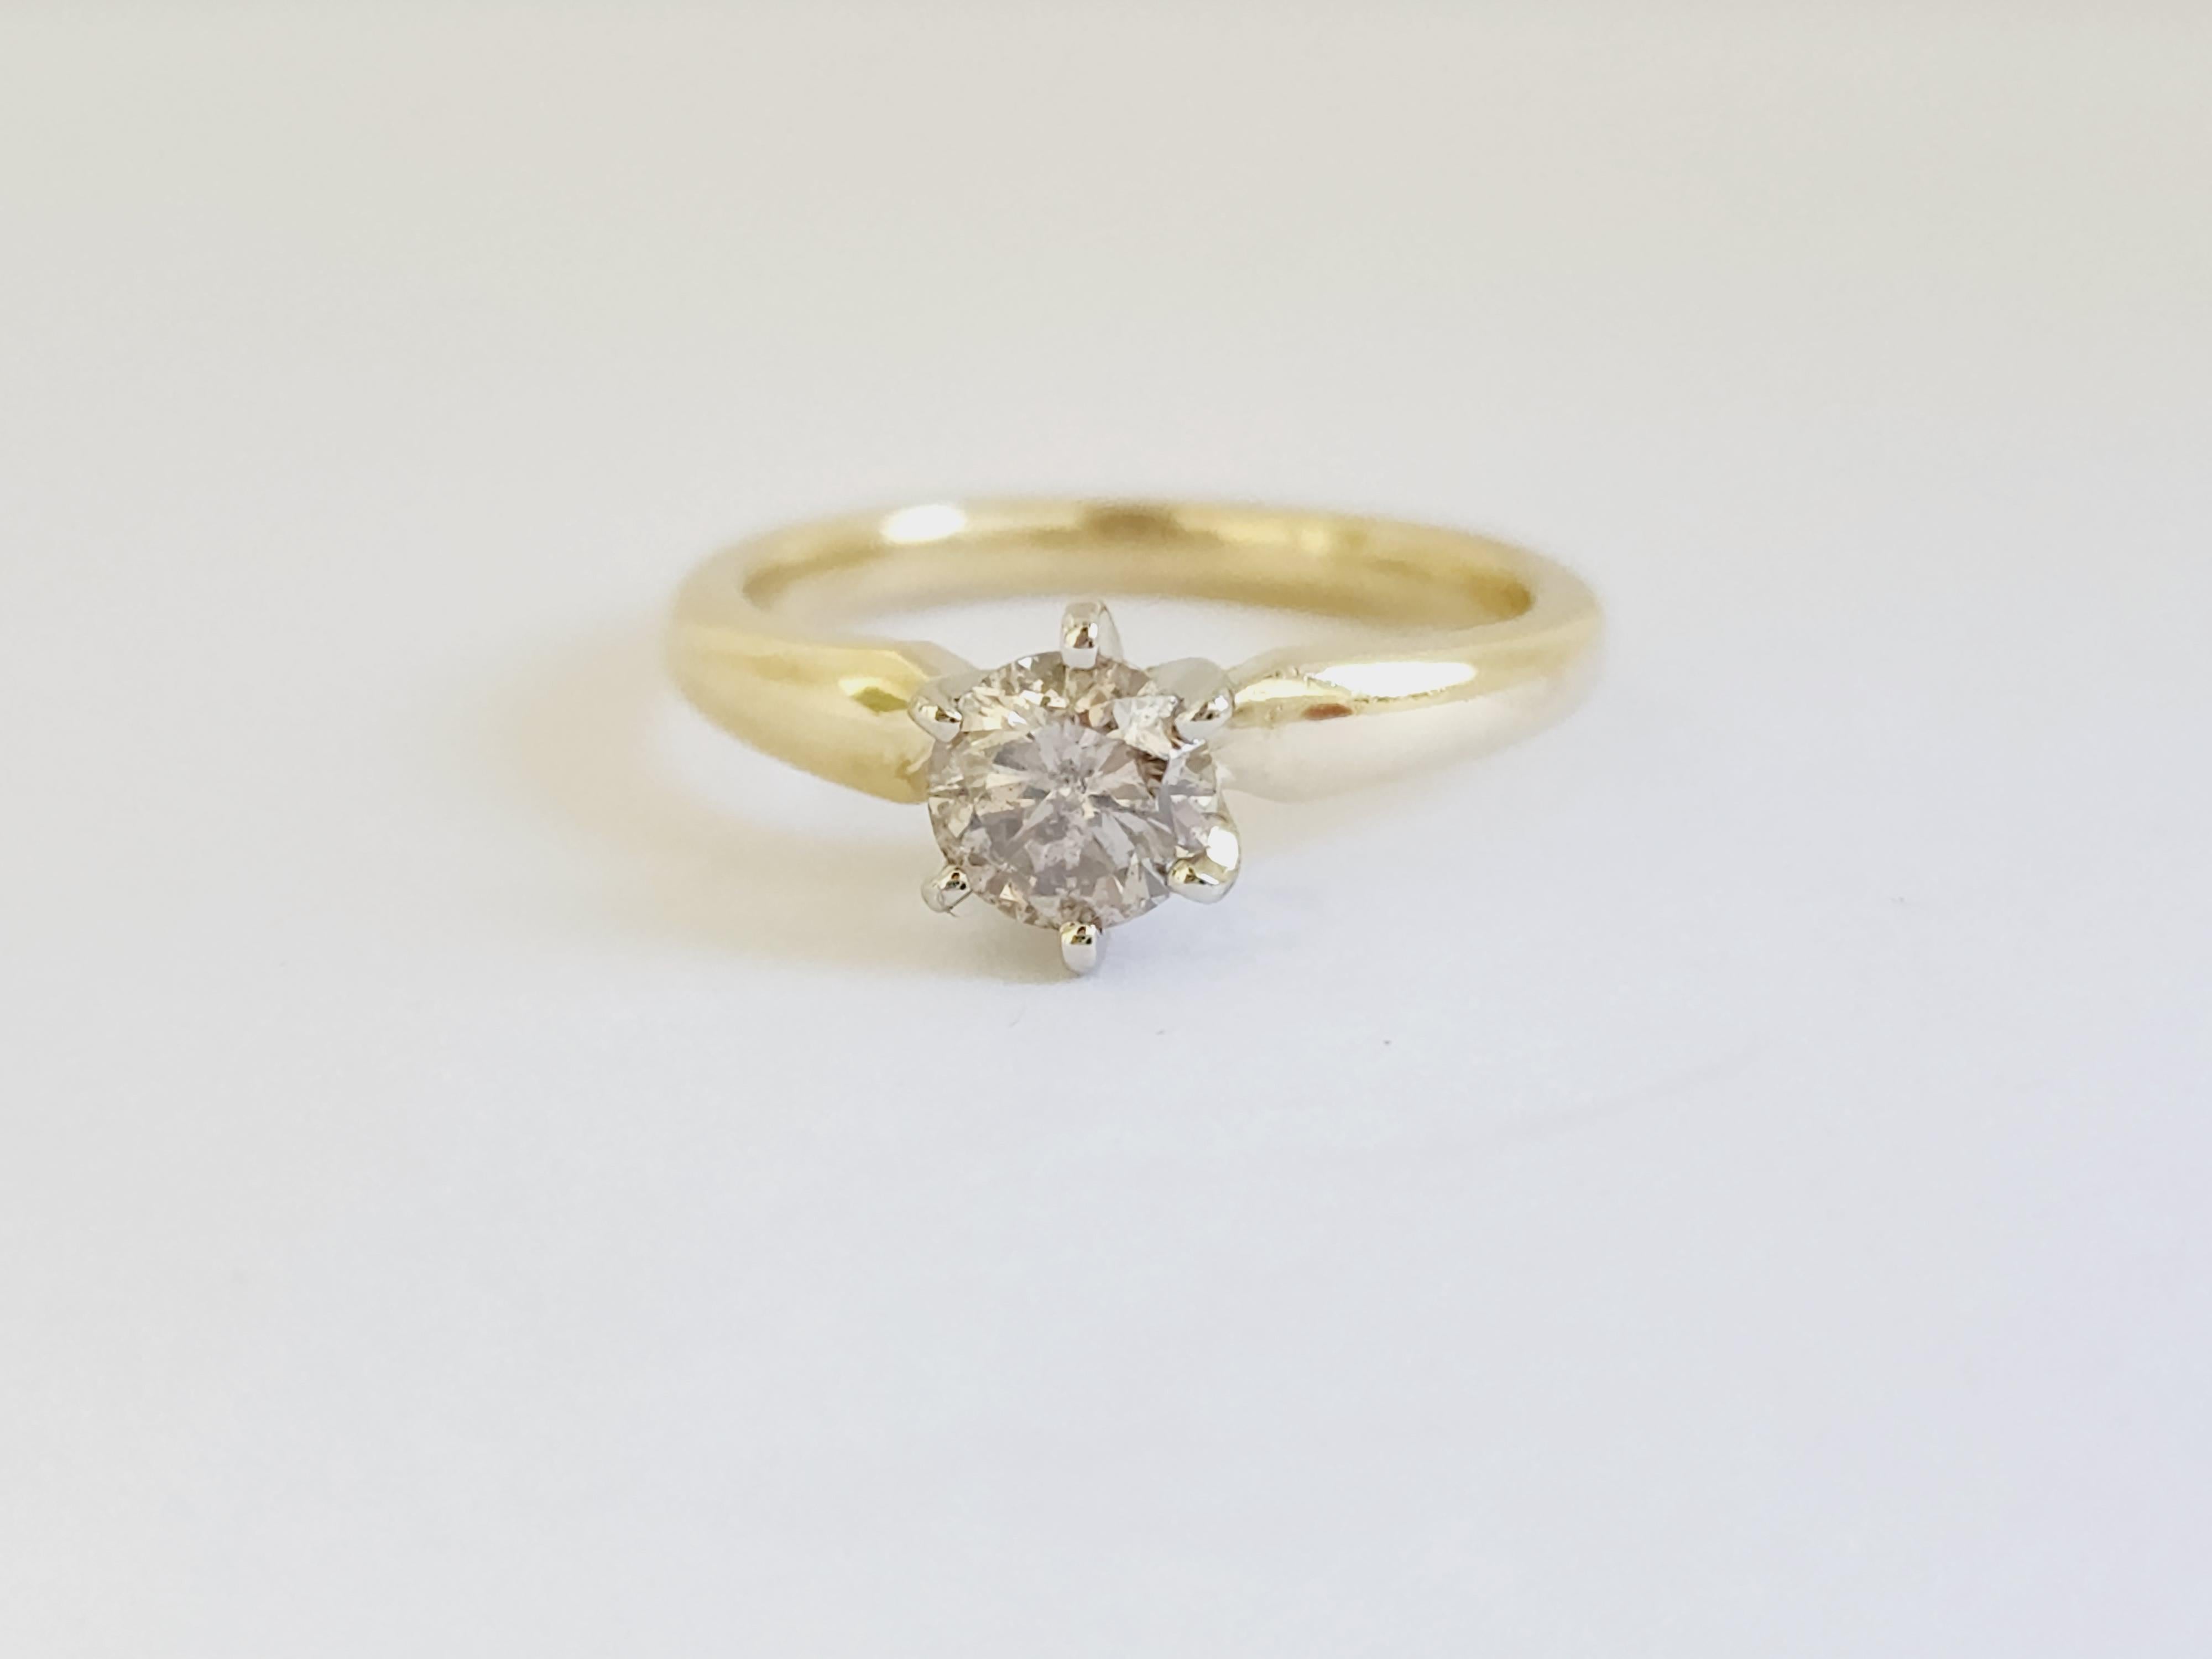 Diamant rond de couleur naturelle brun clair pesant 0,76 carats. 
Monté sur or jaune 14K à 6 branches.
Taille de l'anneau : 6.5